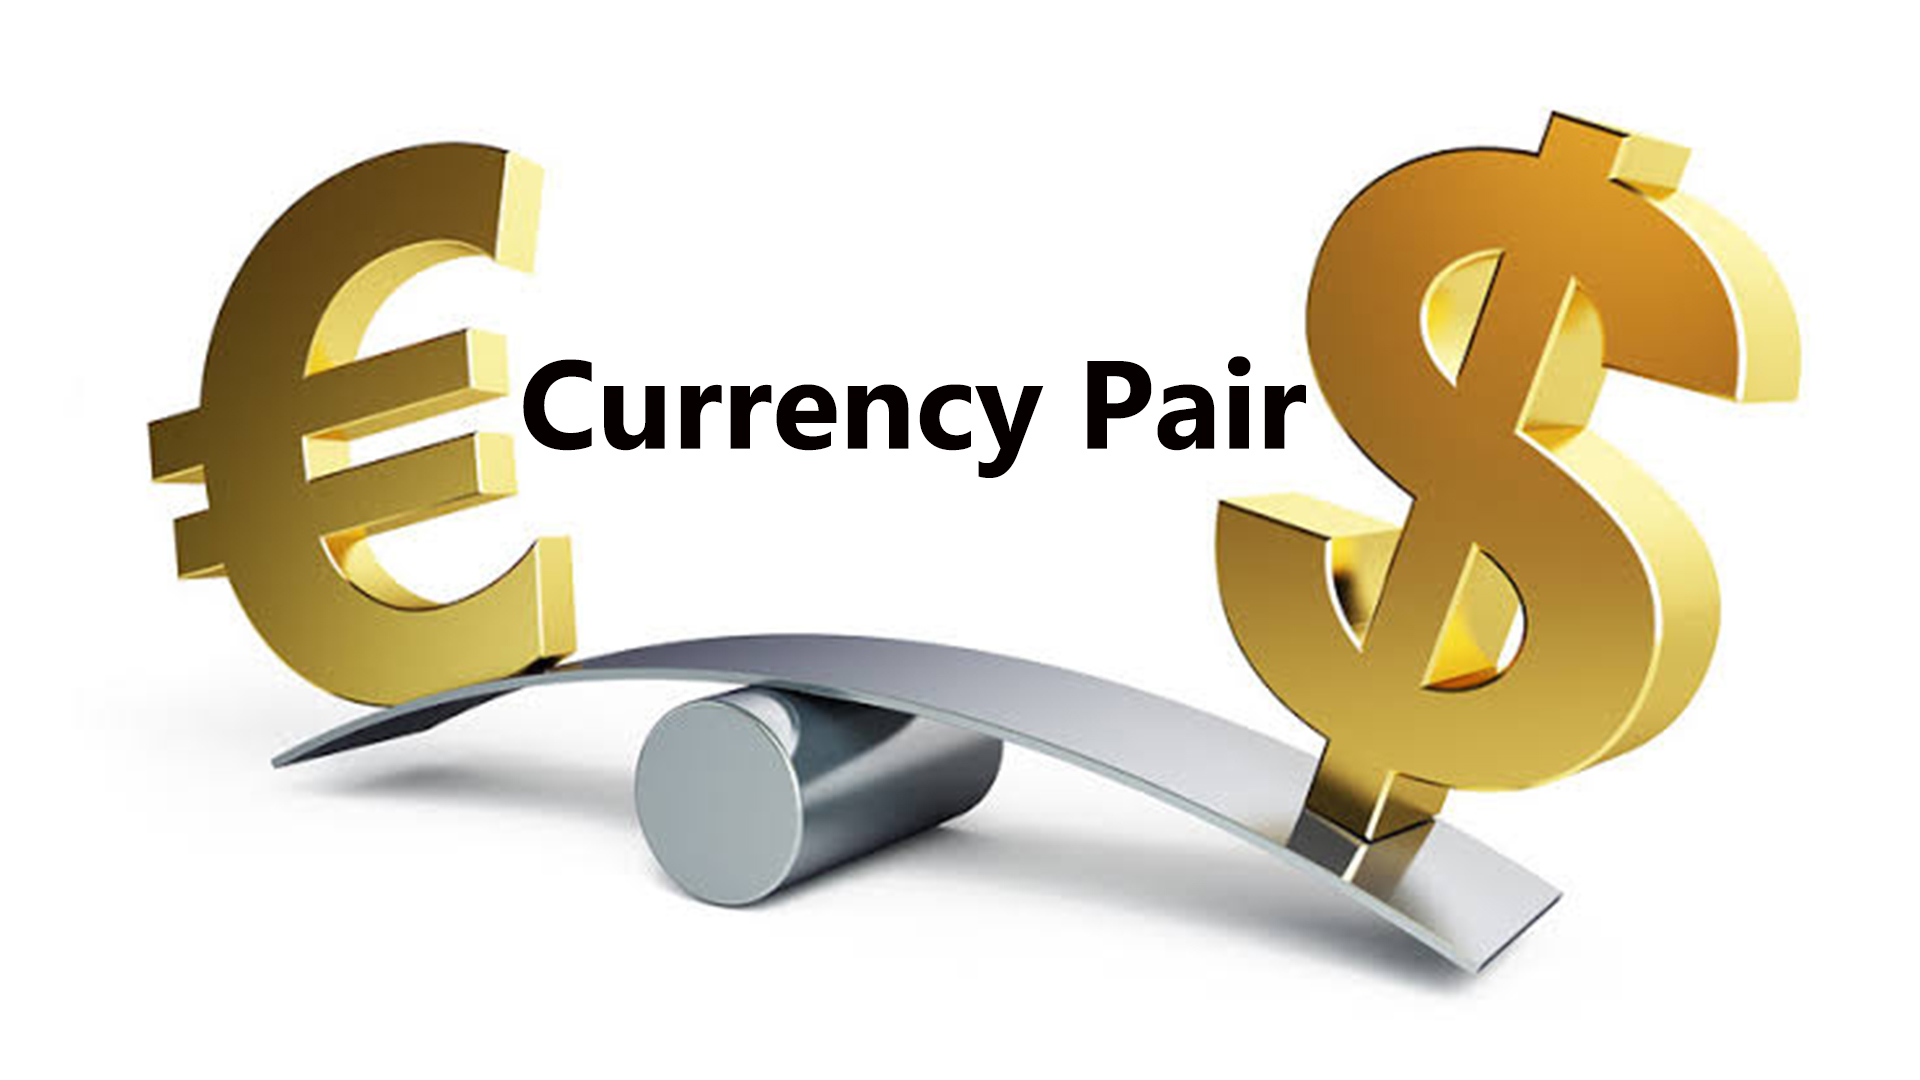 Курс современной экономики. Валюта для презентации. Валютный риск. Изображение валют. Доллар и евро.